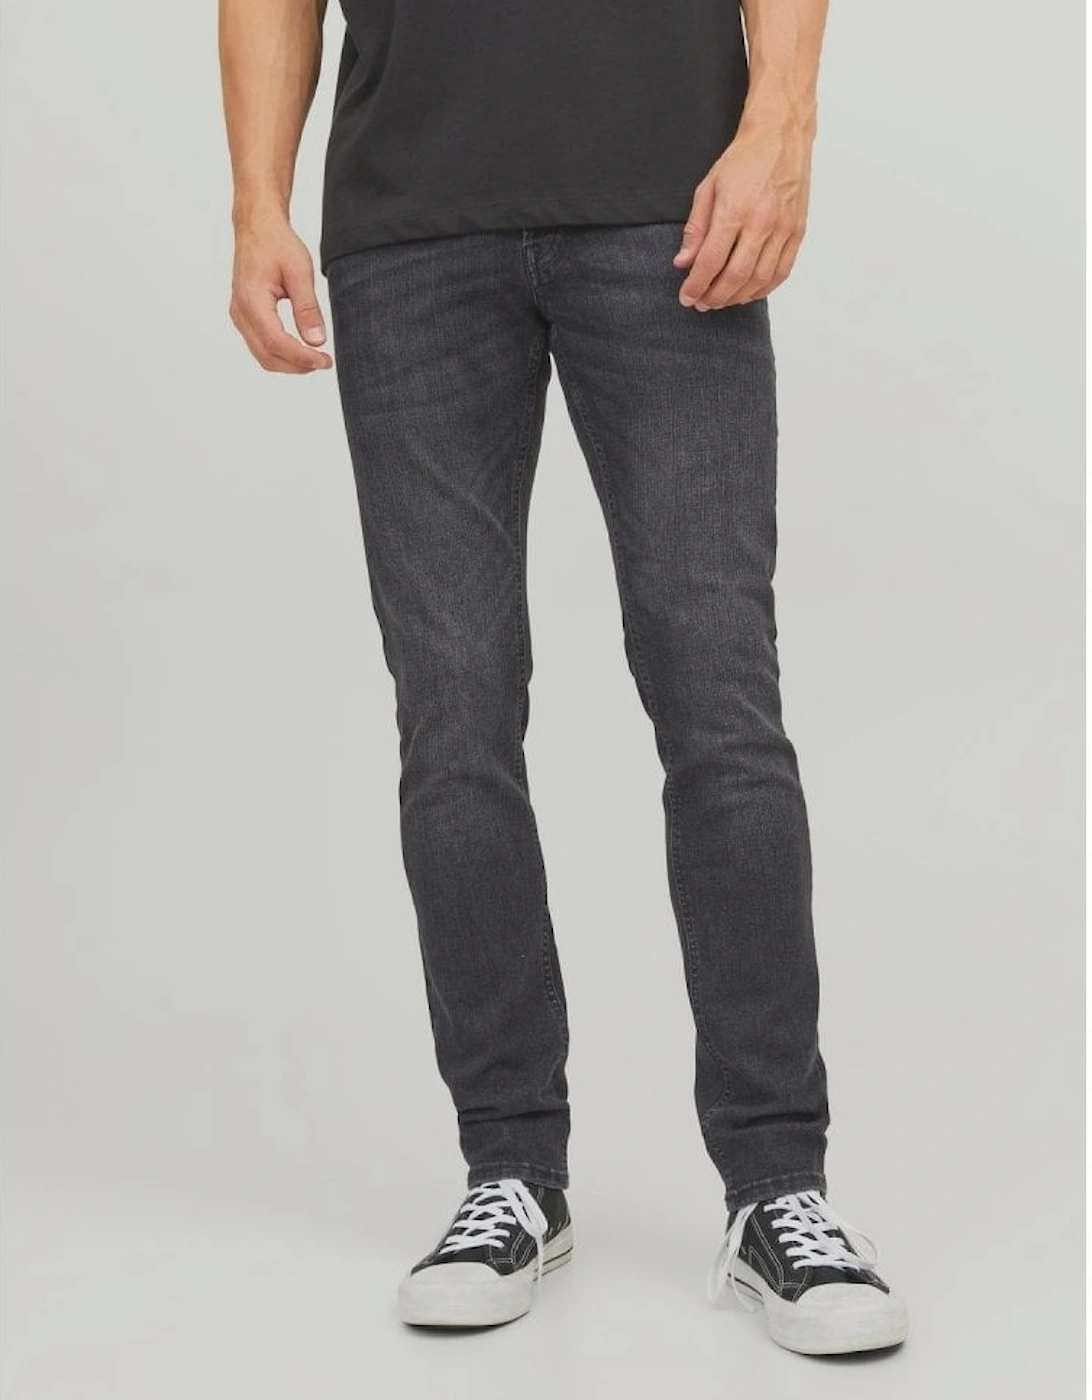 Glenn Original 270 Slim Fit Jeans - Washed Black